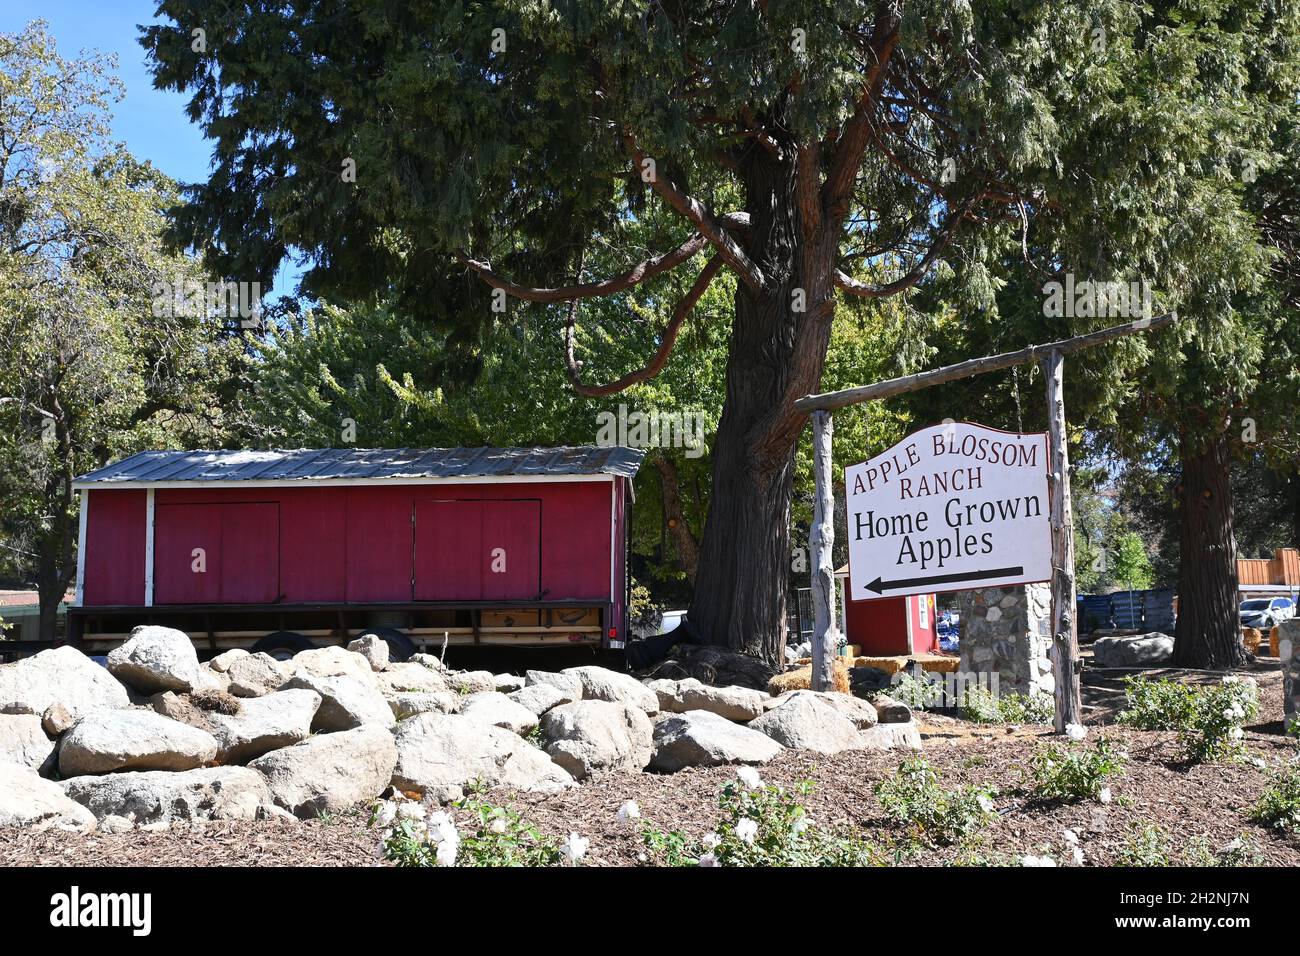 OAK GLEN, CALIFORNIA - 10 OCT 2021: Apple Blossom Ranch hogar de la Sagrada Miel, el Sr. Laws Apple Shed, el Mercantile y Oak Glen Motel. Foto de stock